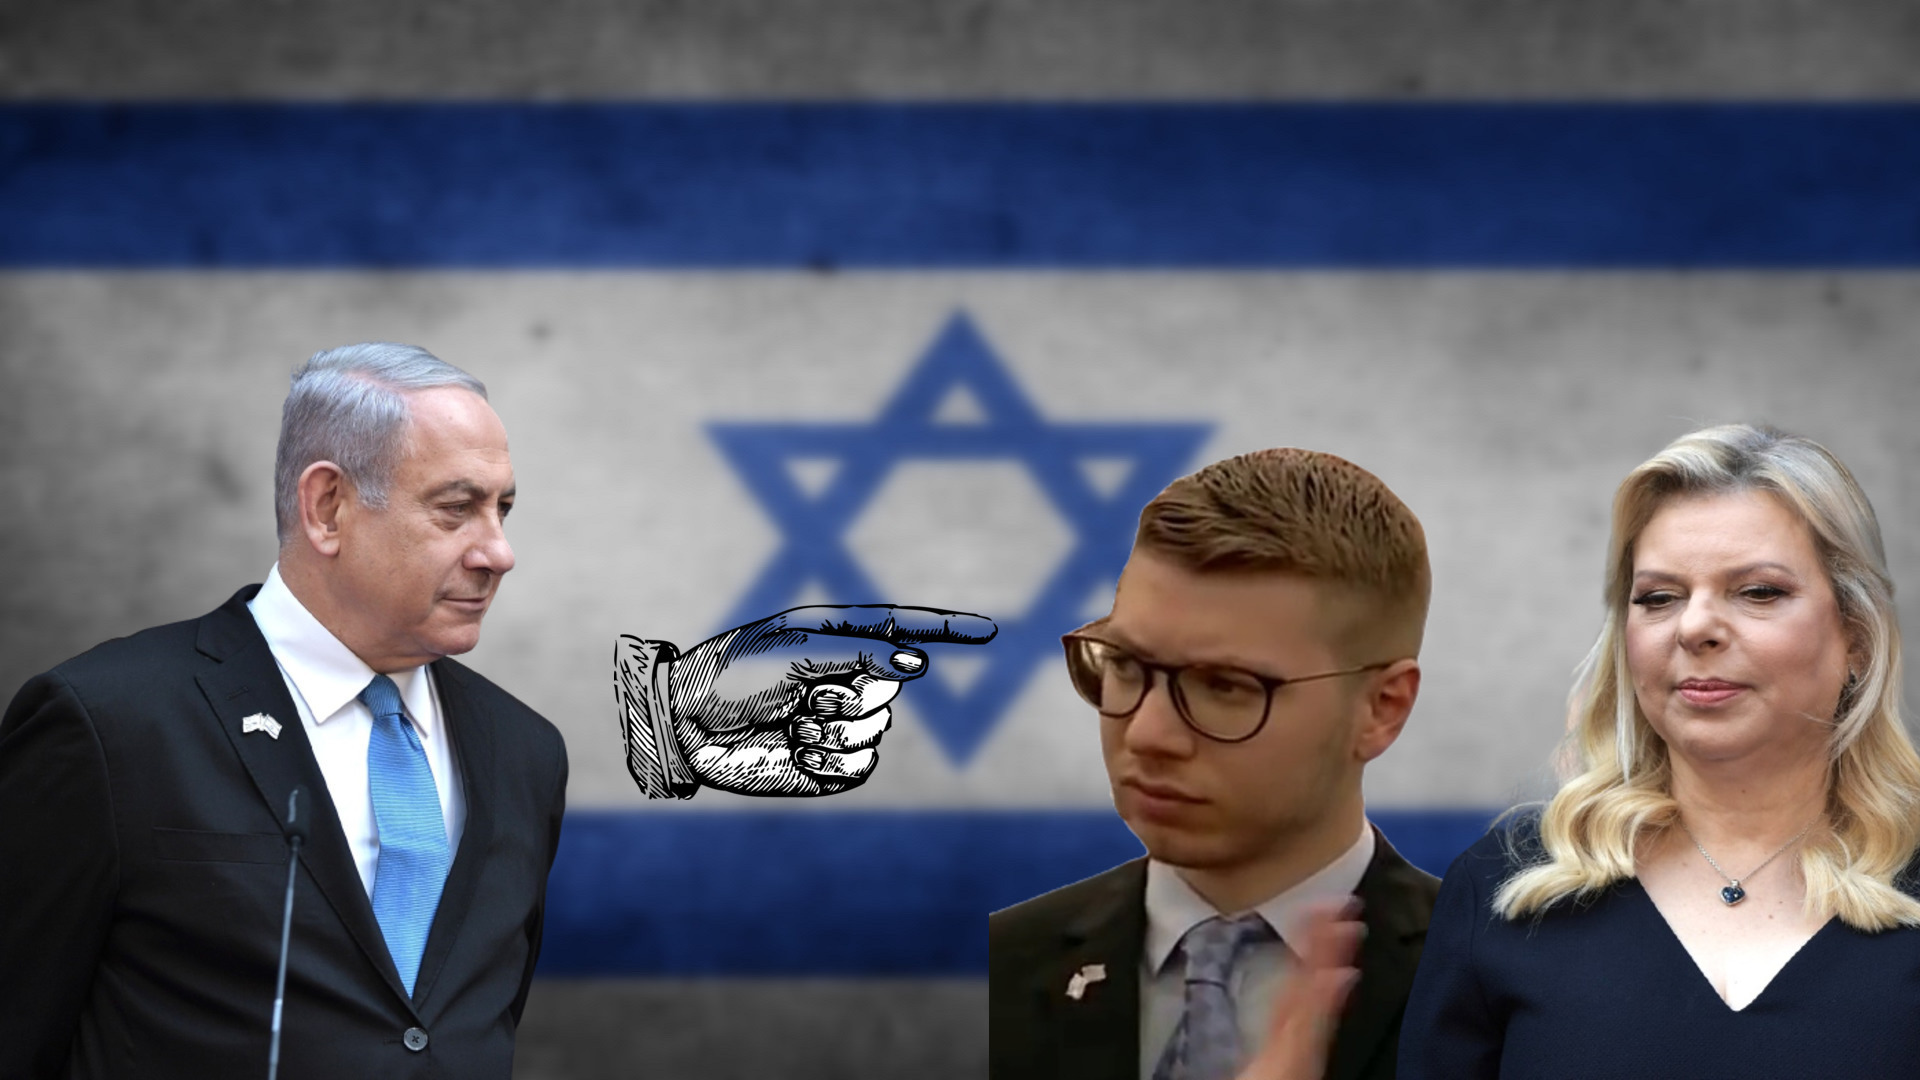 Netanyahu Offers Surprising Defense in Trial